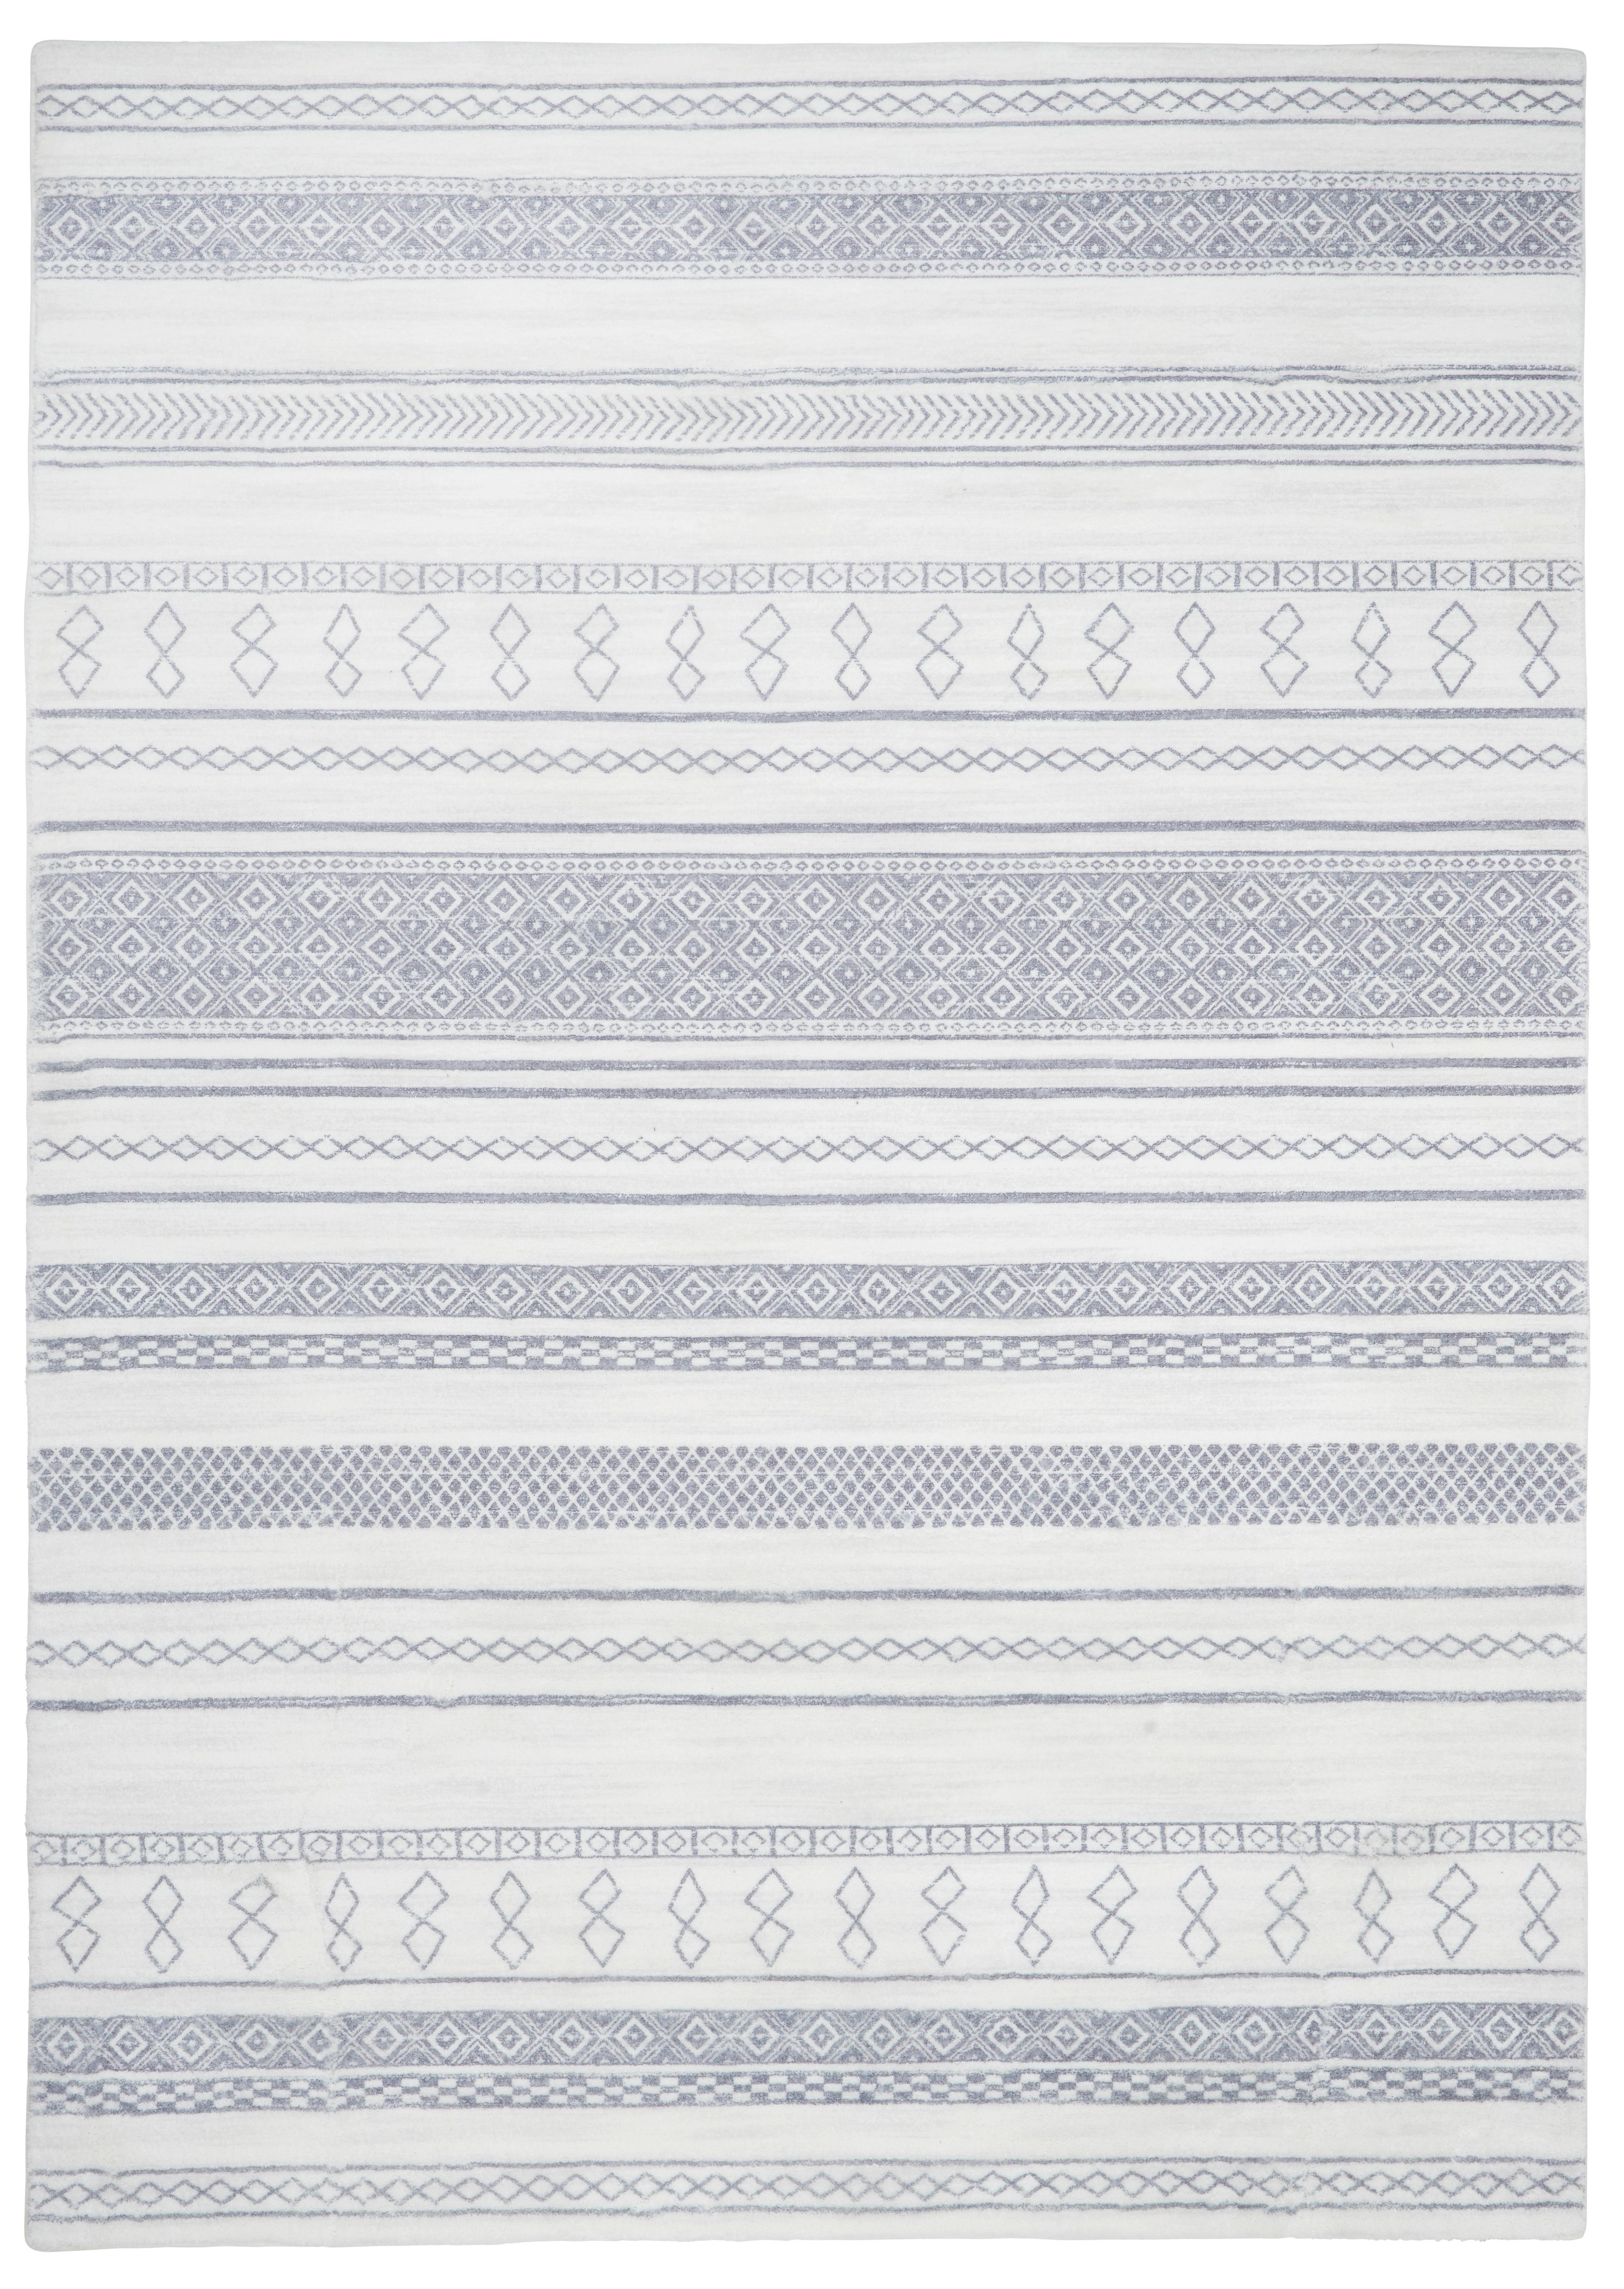 Kunstfell Etno 2 in Beige ca. 120x160cm - Beige, MODERN, Textil (120/160cm) - Modern Living